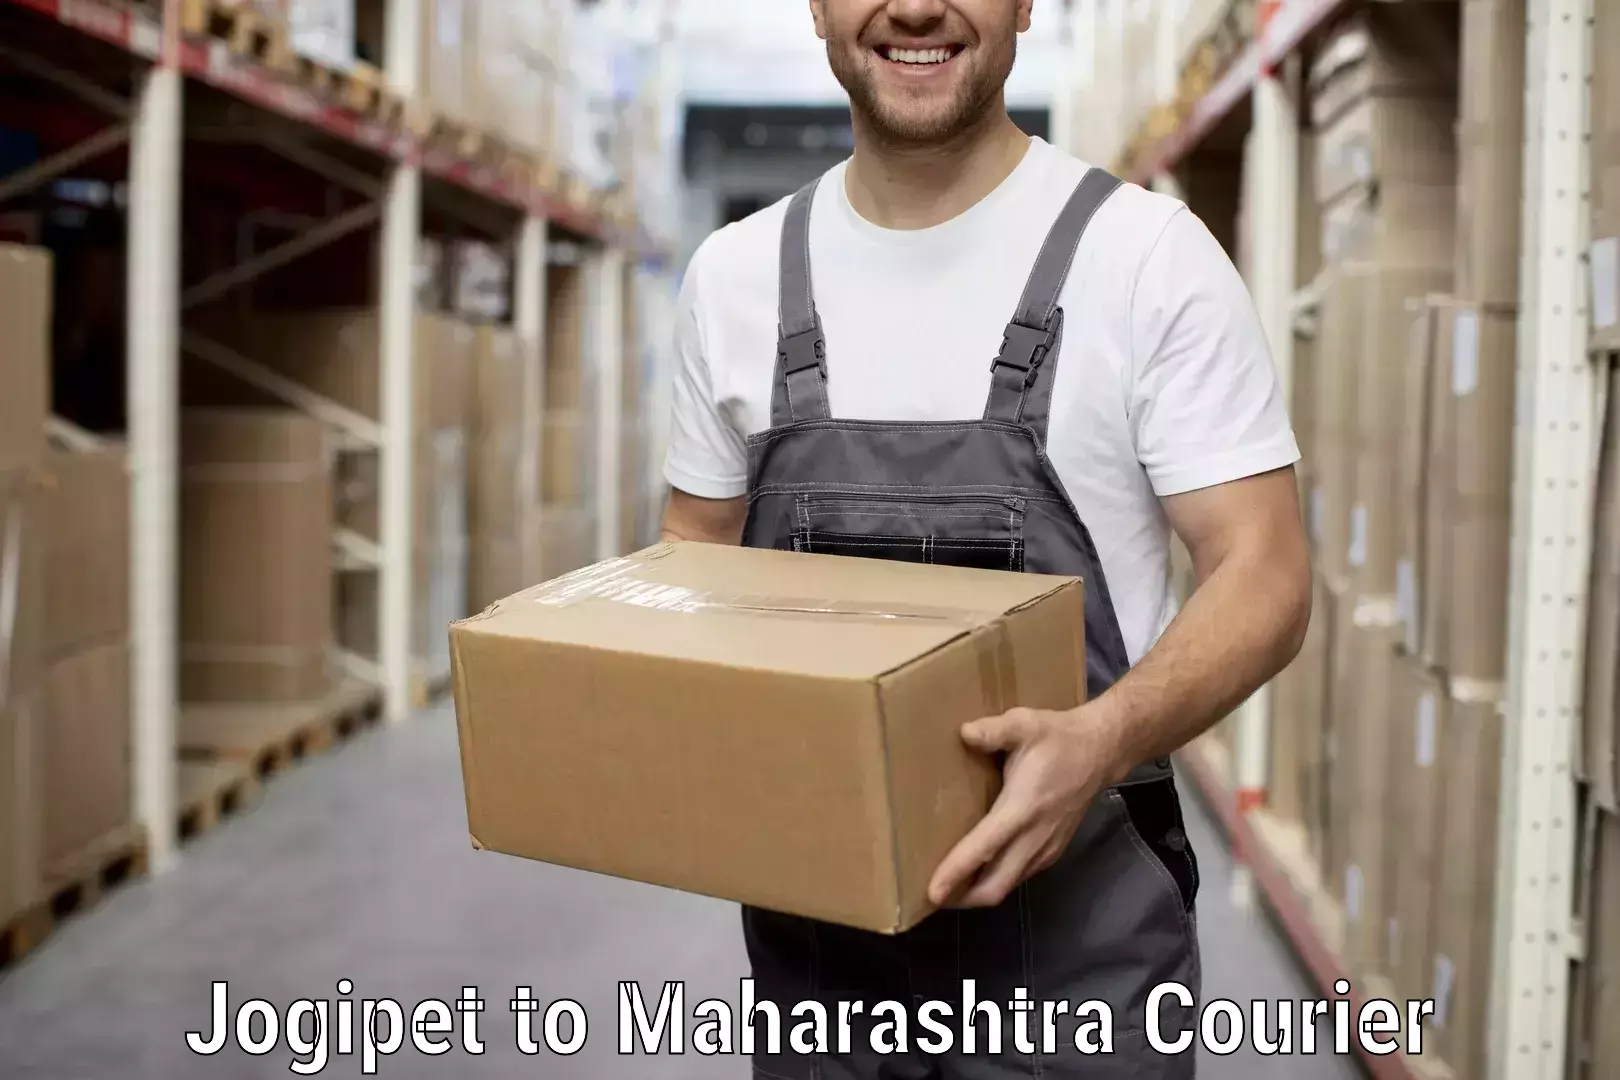 Furniture transport experts Jogipet to Maharashtra